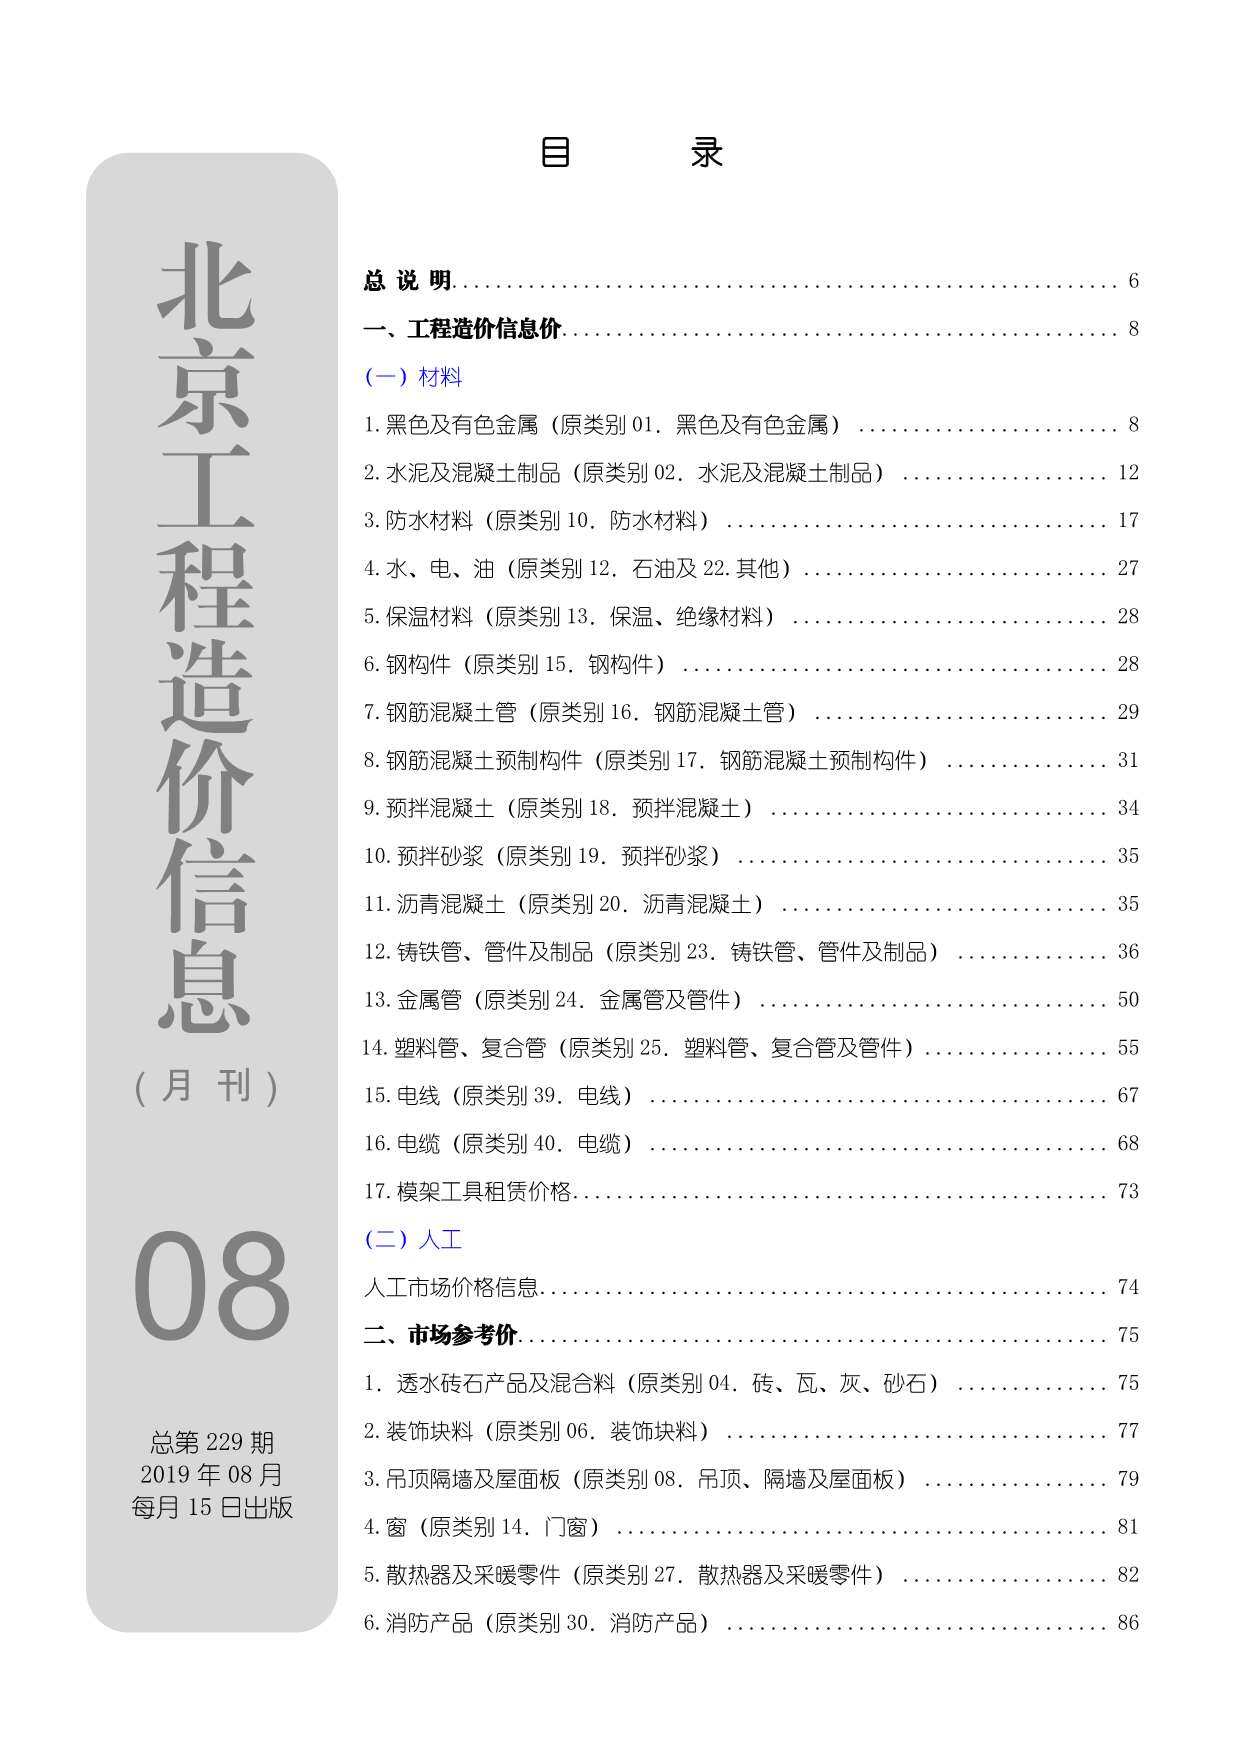 北京市2019年8月工程造价信息期刊封面